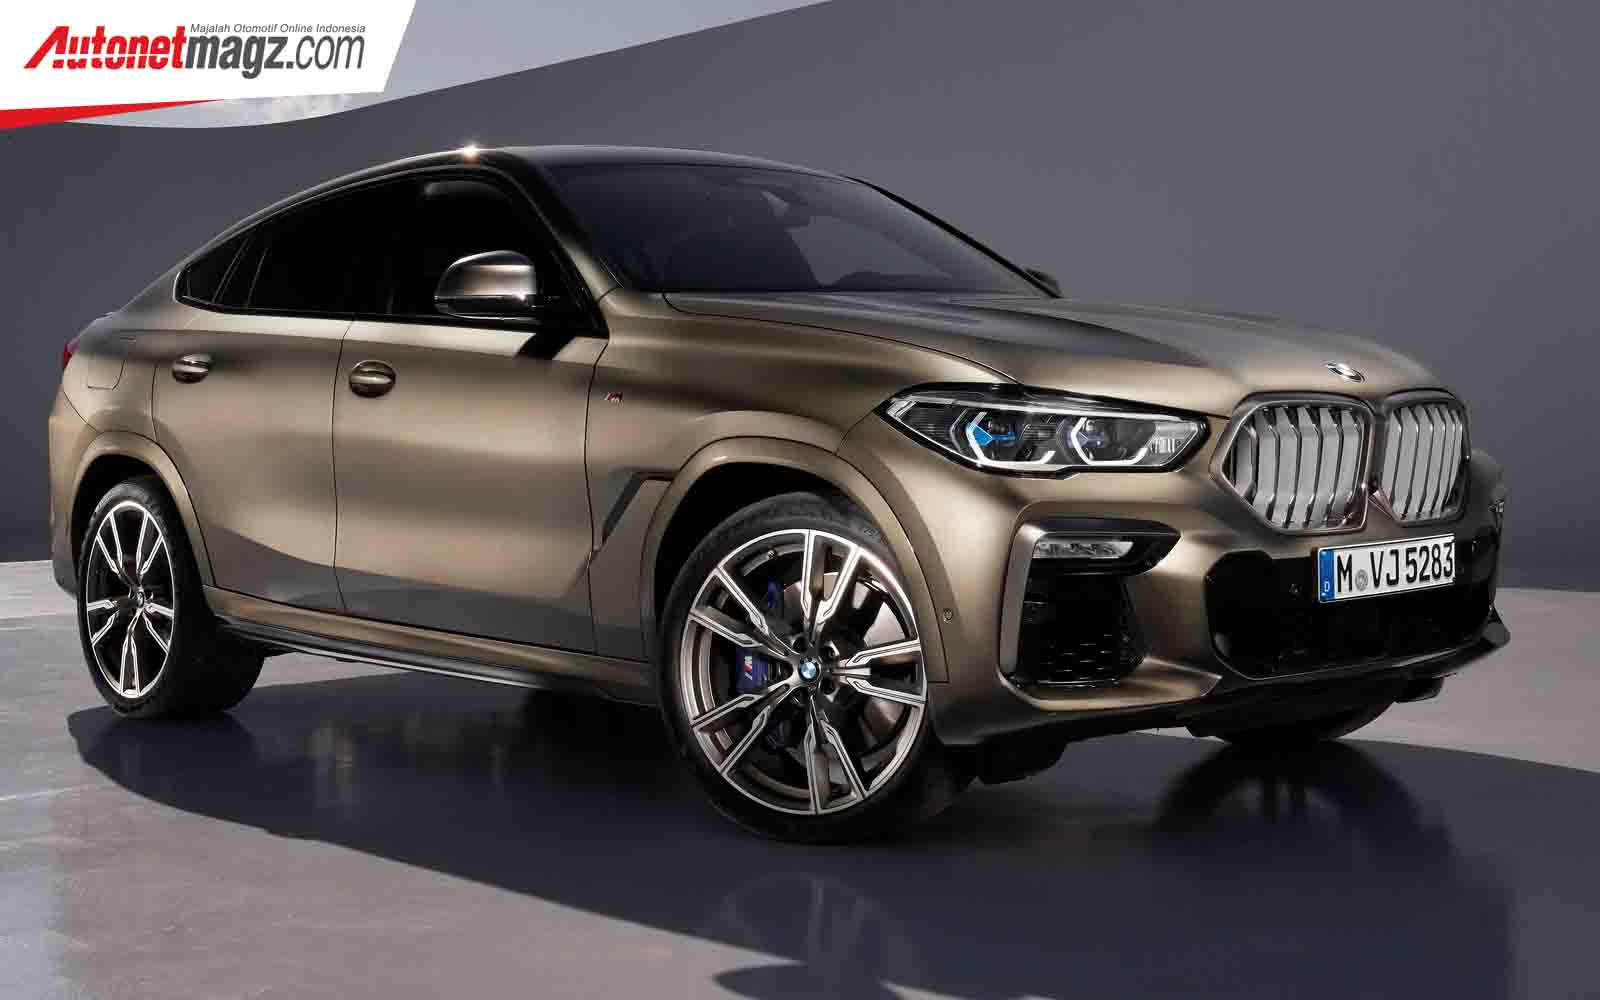 Berita, Fitur New BMW X6 G06: New BMW X6 G06 Resmi Diperkenalkan, Bak 8-Series Versi Coupe SUV!